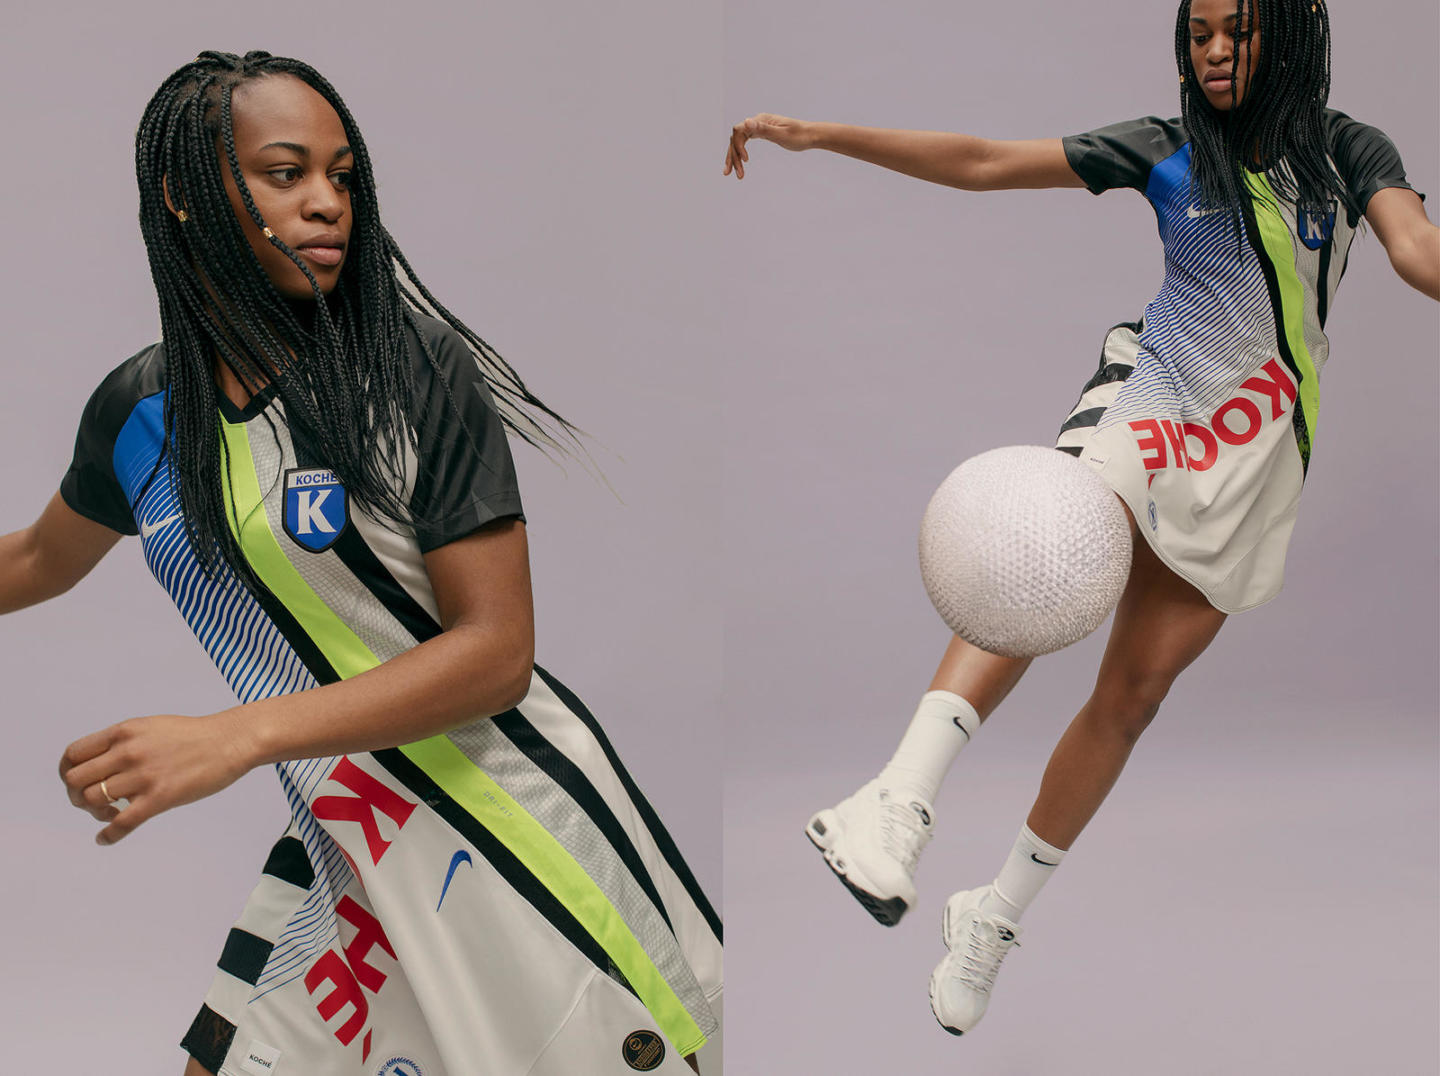 Nike создал женскую коллекцию, вдохновлённую футбольными джерси. Изображение номер 1